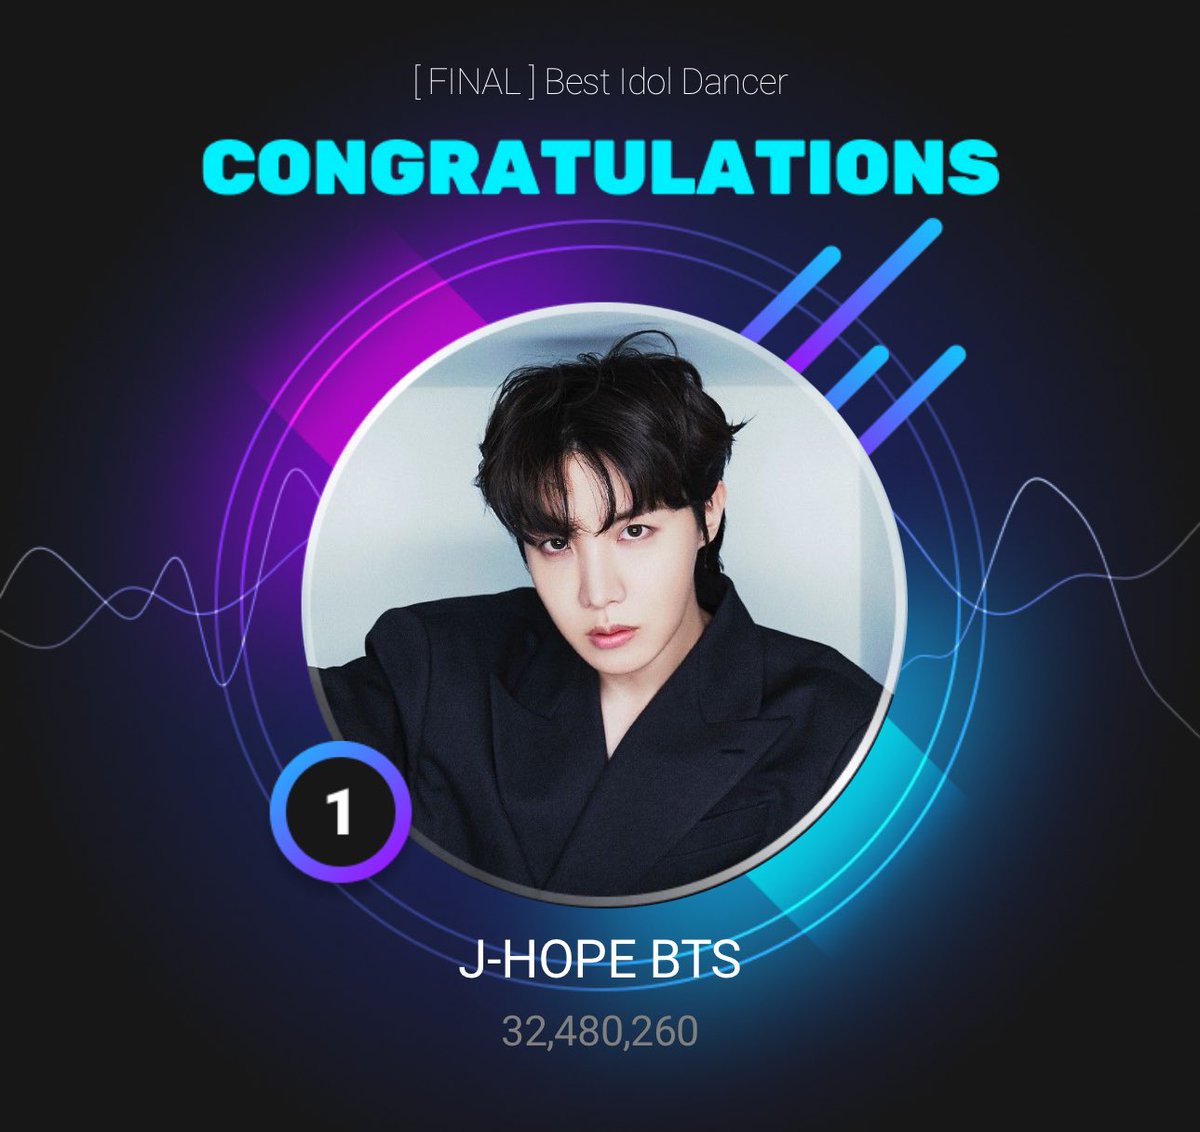 J-HOPE placed 1st for 'BEST IDOL DANCER' with 32,480,260 votes via UPICK! CONGRATULATIONS J-HOPE BEST IDOL DANCER FOREVER ARTIST J-HOPE